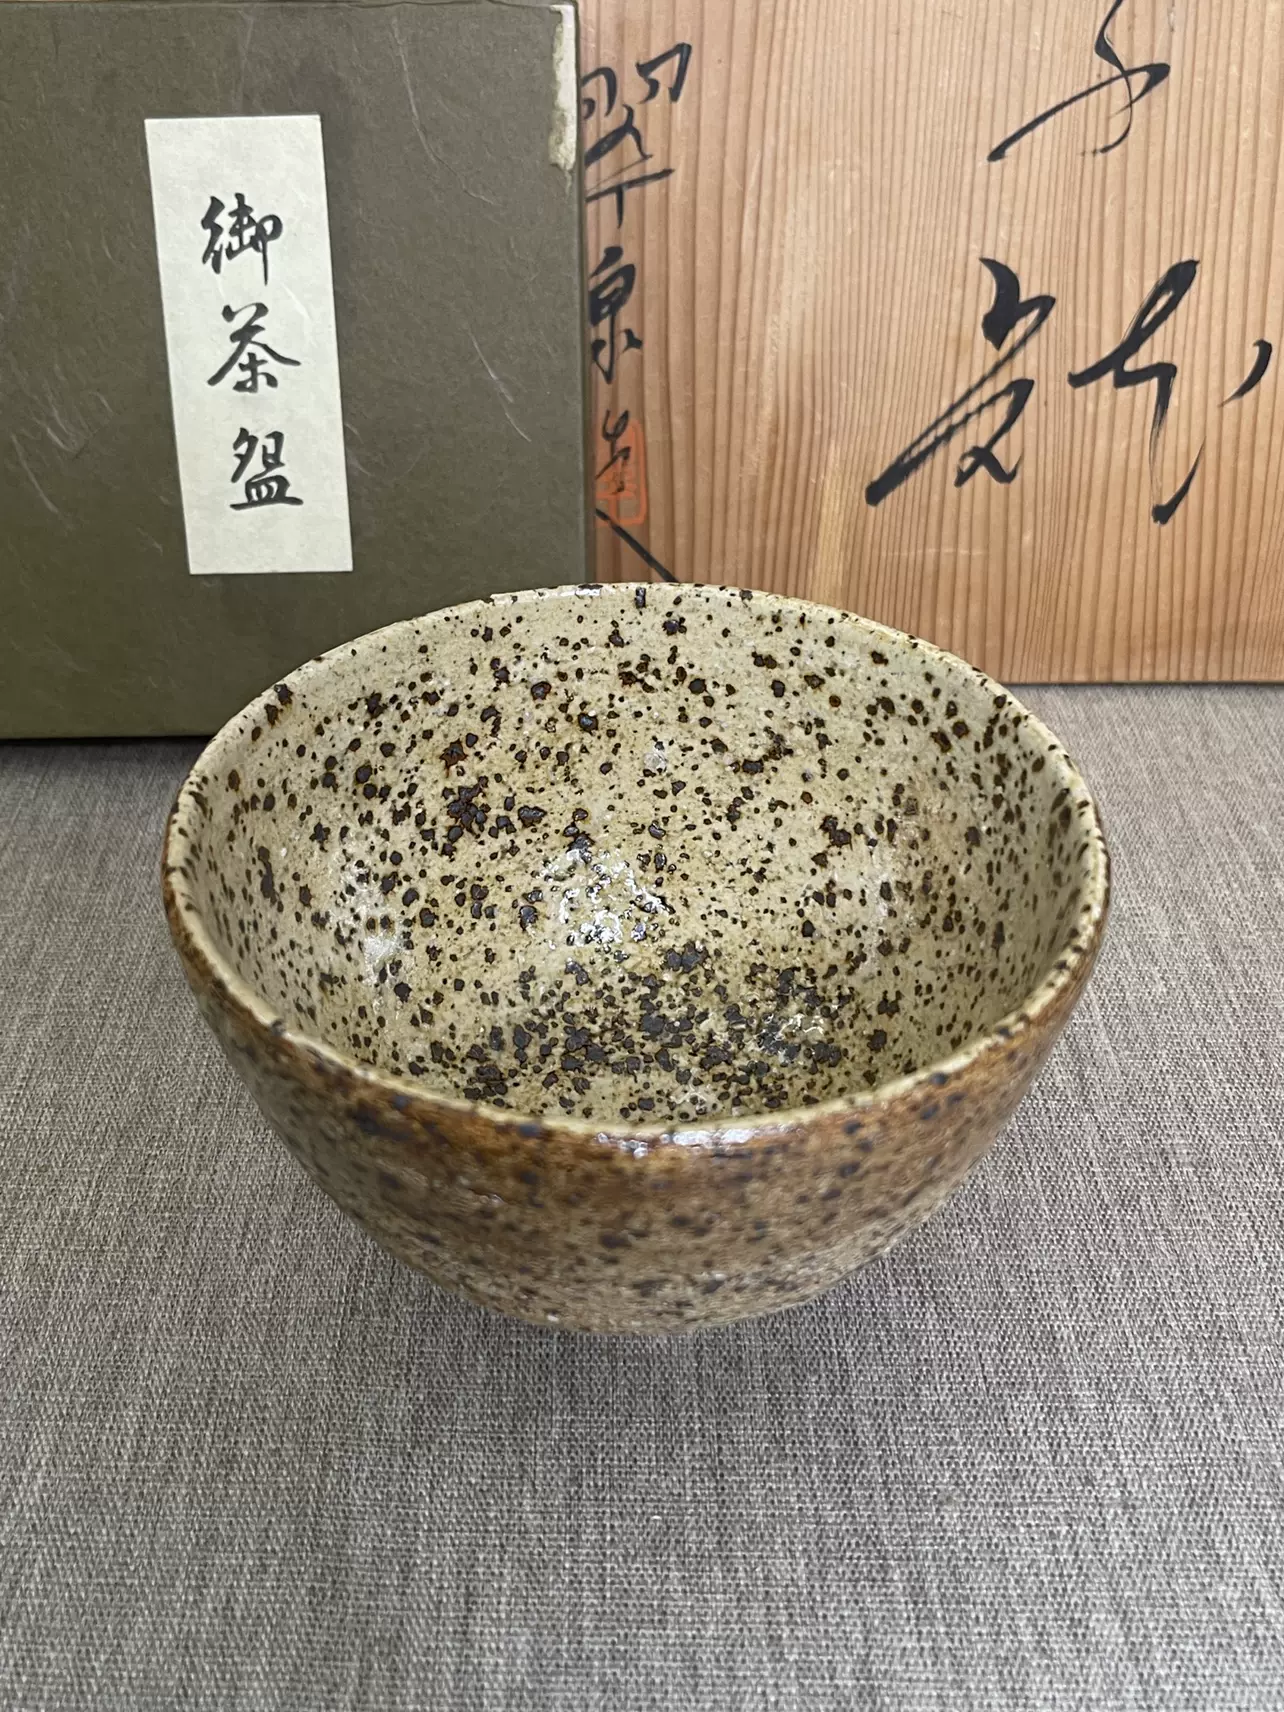 日本茶碗抹茶碗小建水茶具茶道具陶瓷瓷器年代物收藏品-Taobao Vietnam